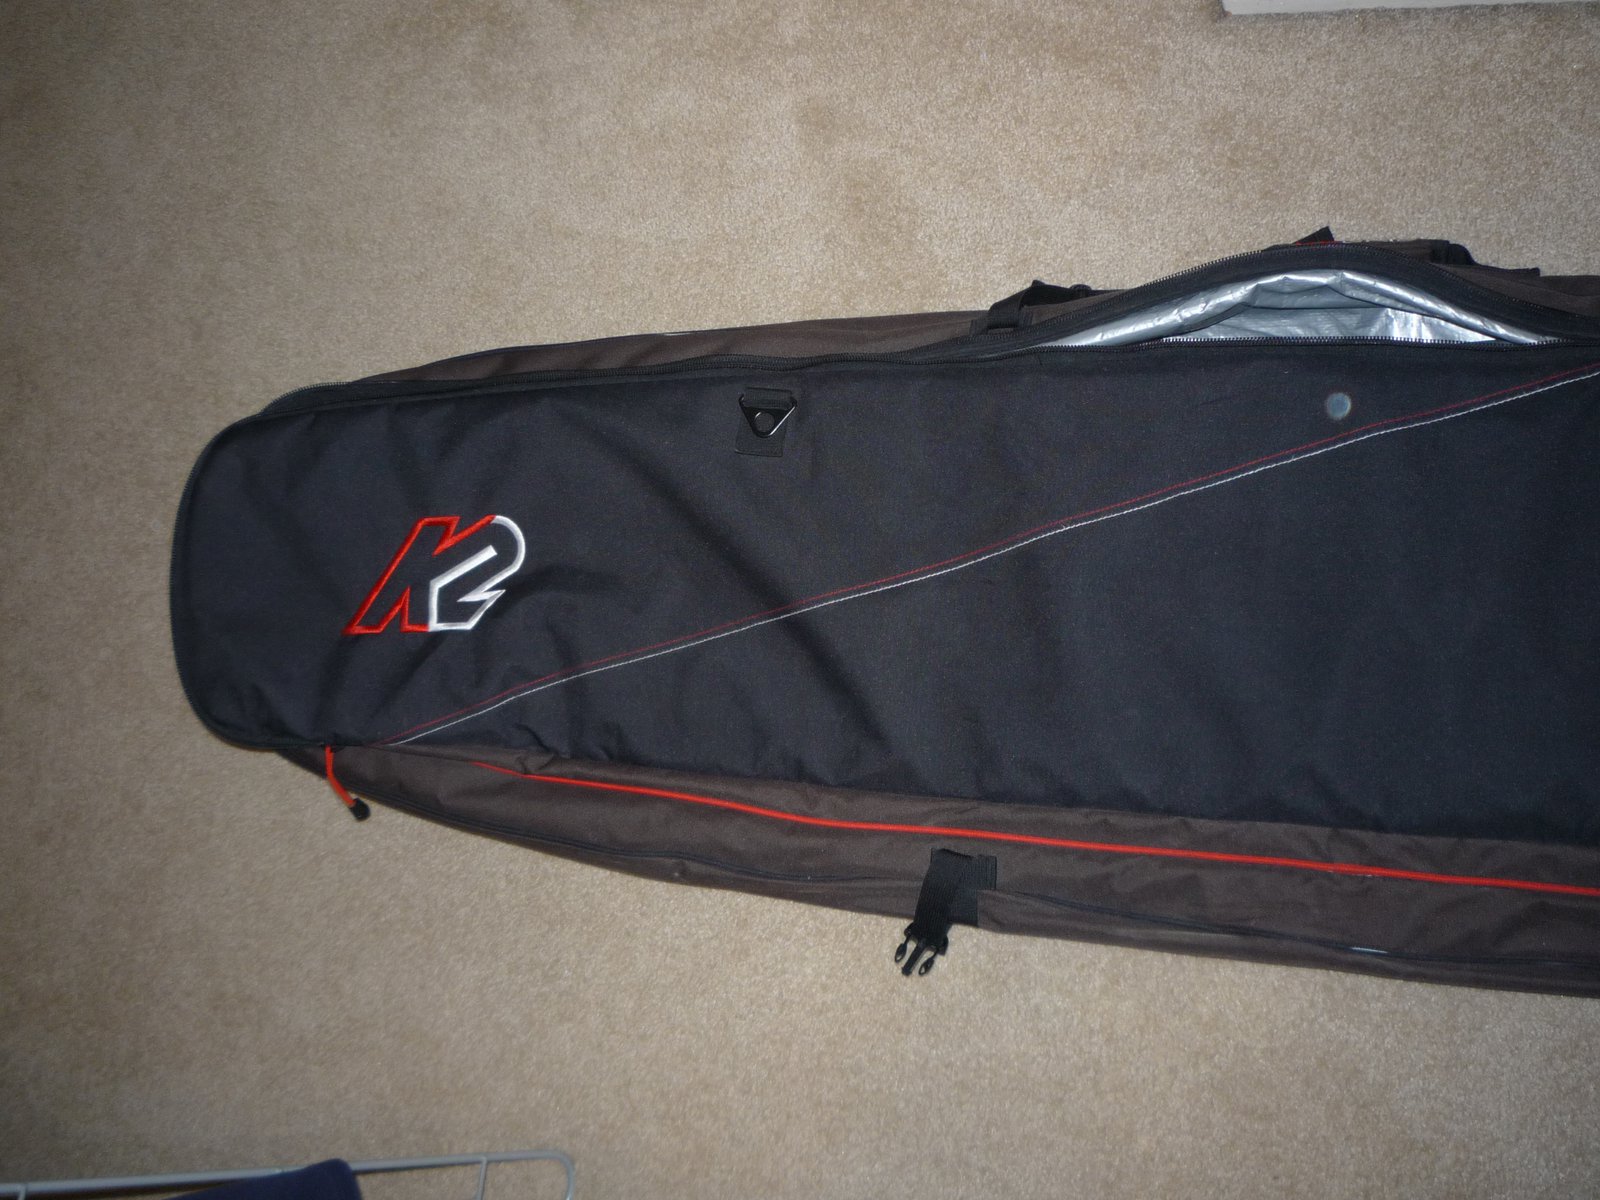 K2 Ski Bag for sale